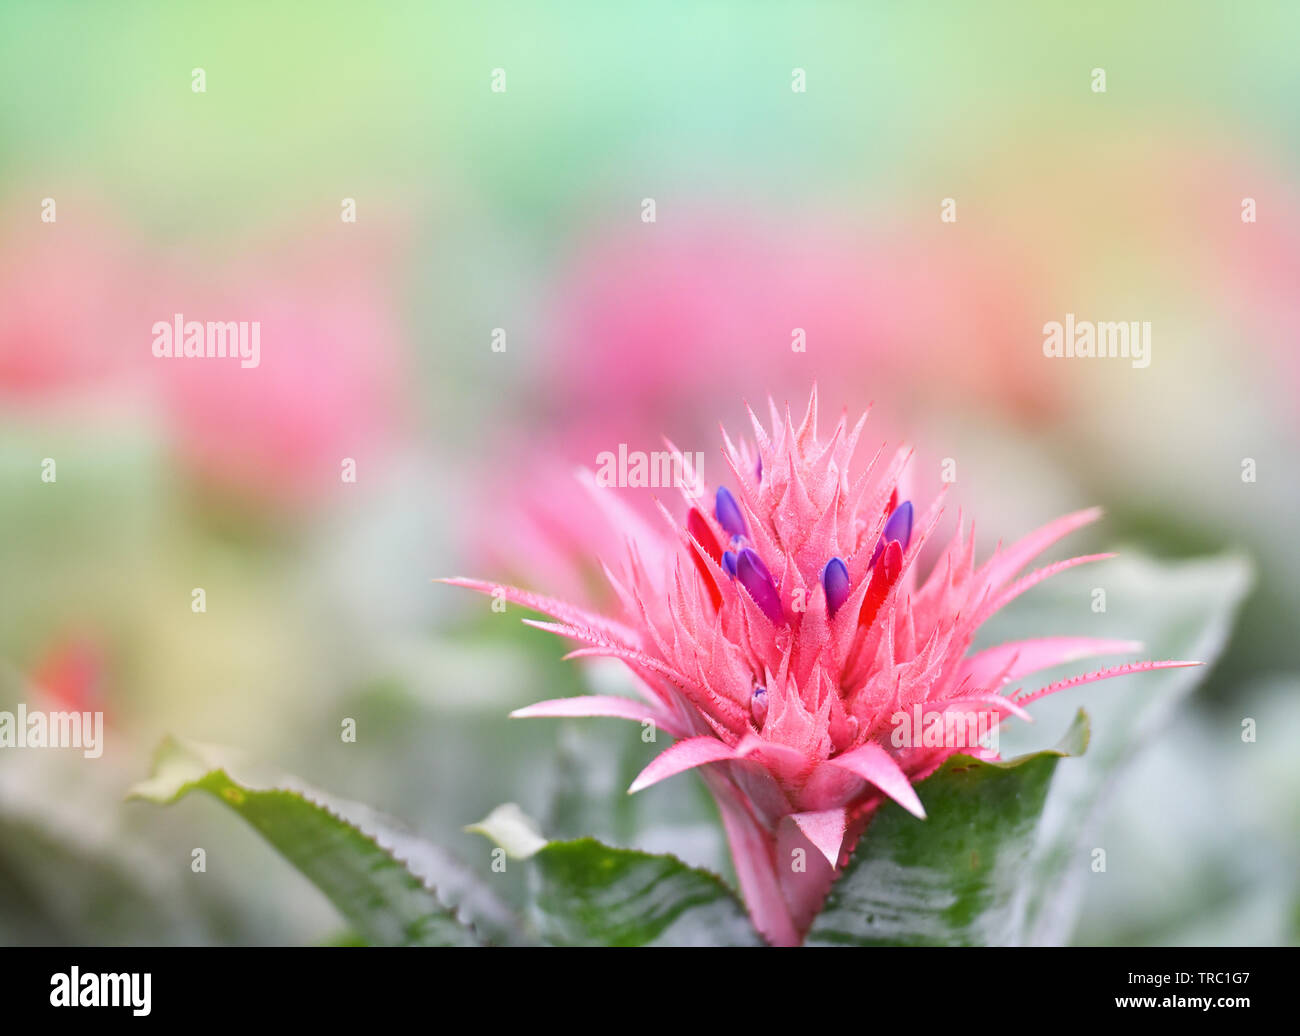 Pink bromeliad flower in garden / Aechmea fasciata Bromeliad Stock Photo